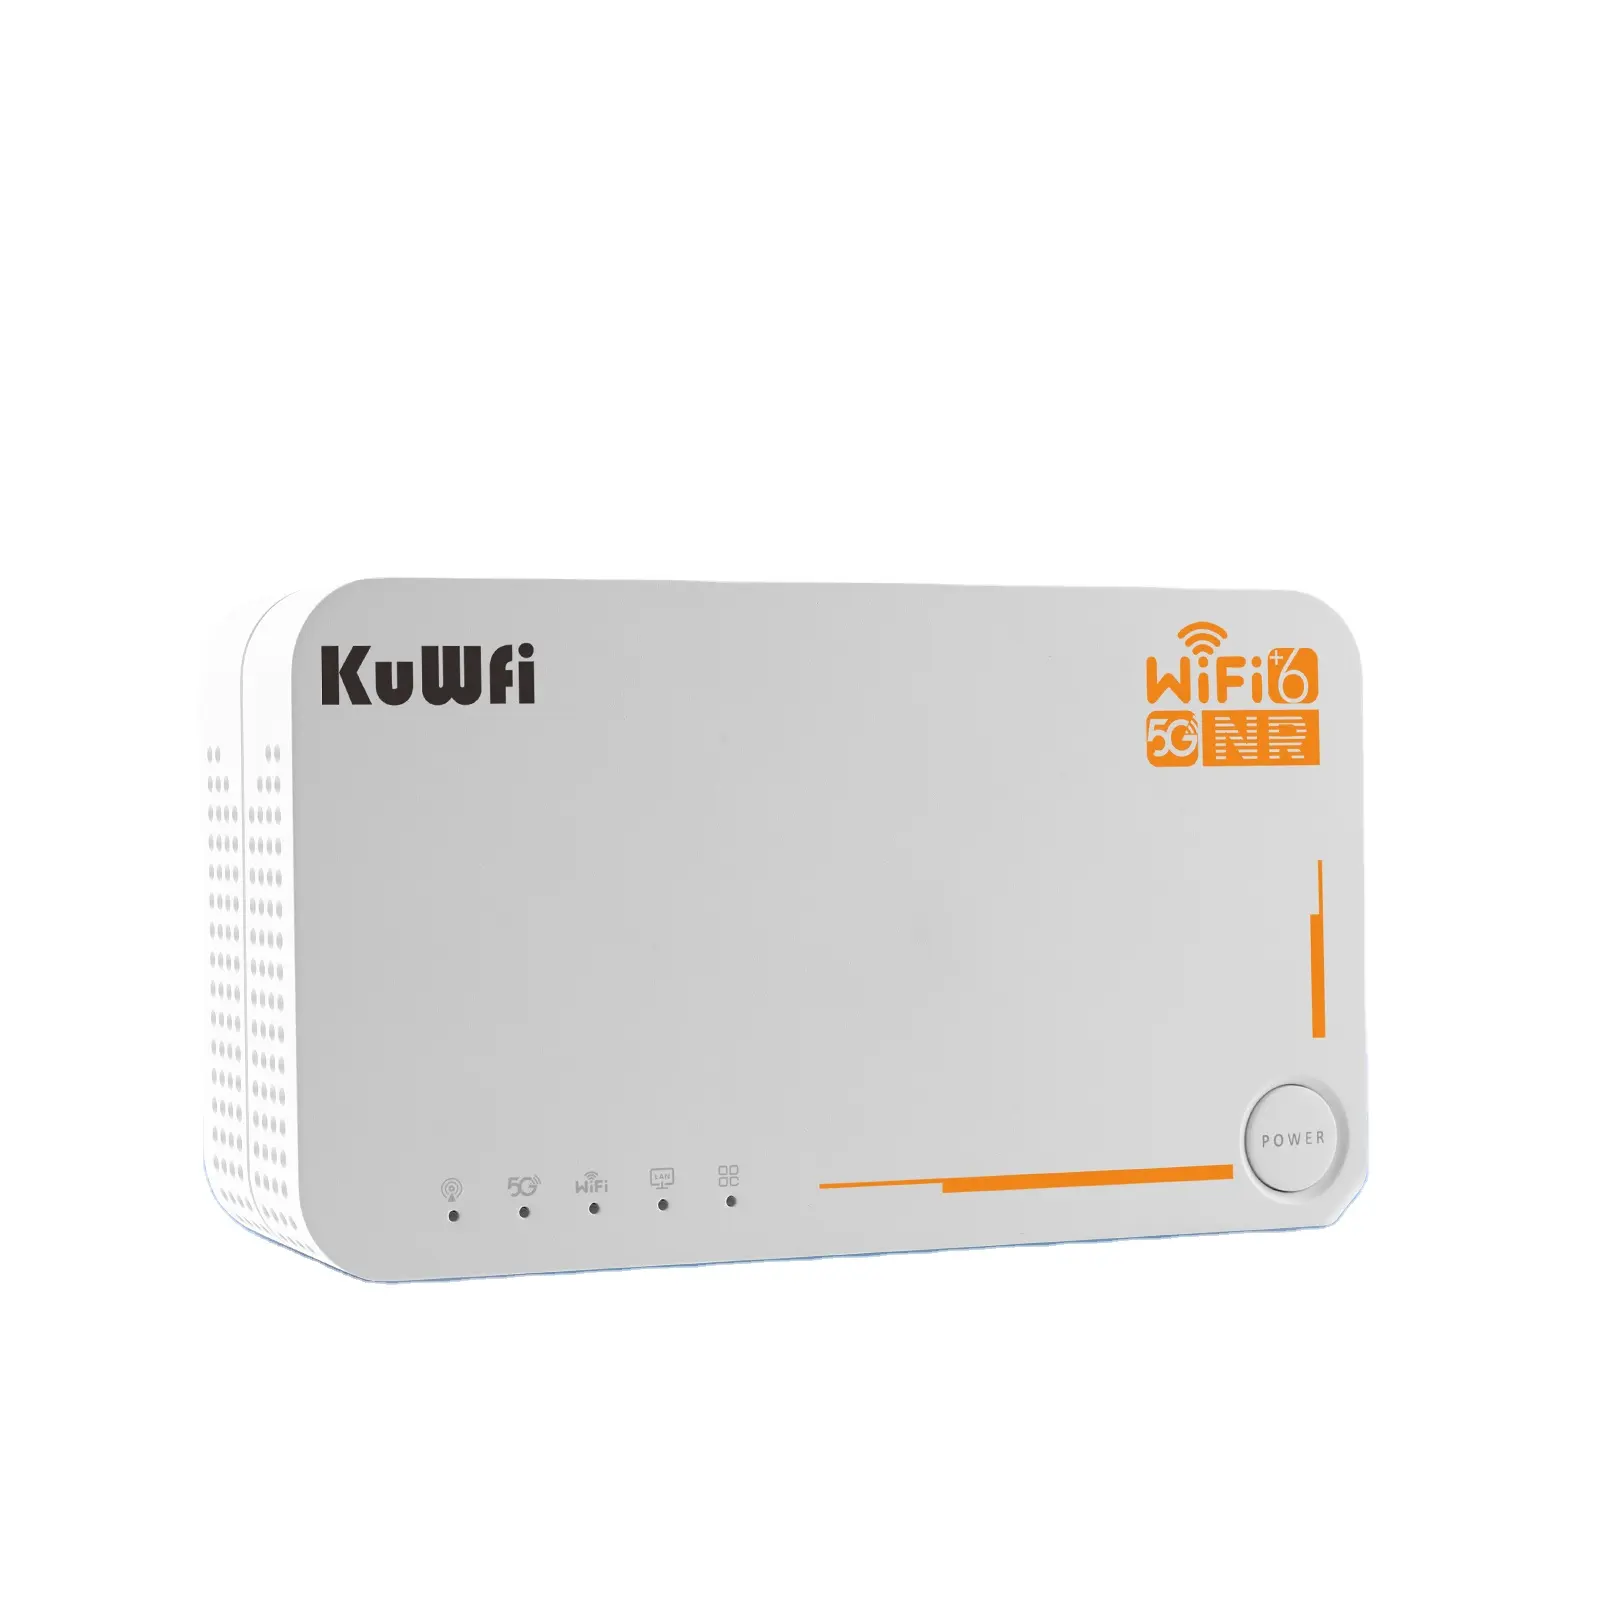 Bandas americanas KuWFi alta velocidade 5g cpe ruter wifi router 5g 4000mAh 32 usuários suporte 5g banda completa wifi6 router com slot para cartão sim